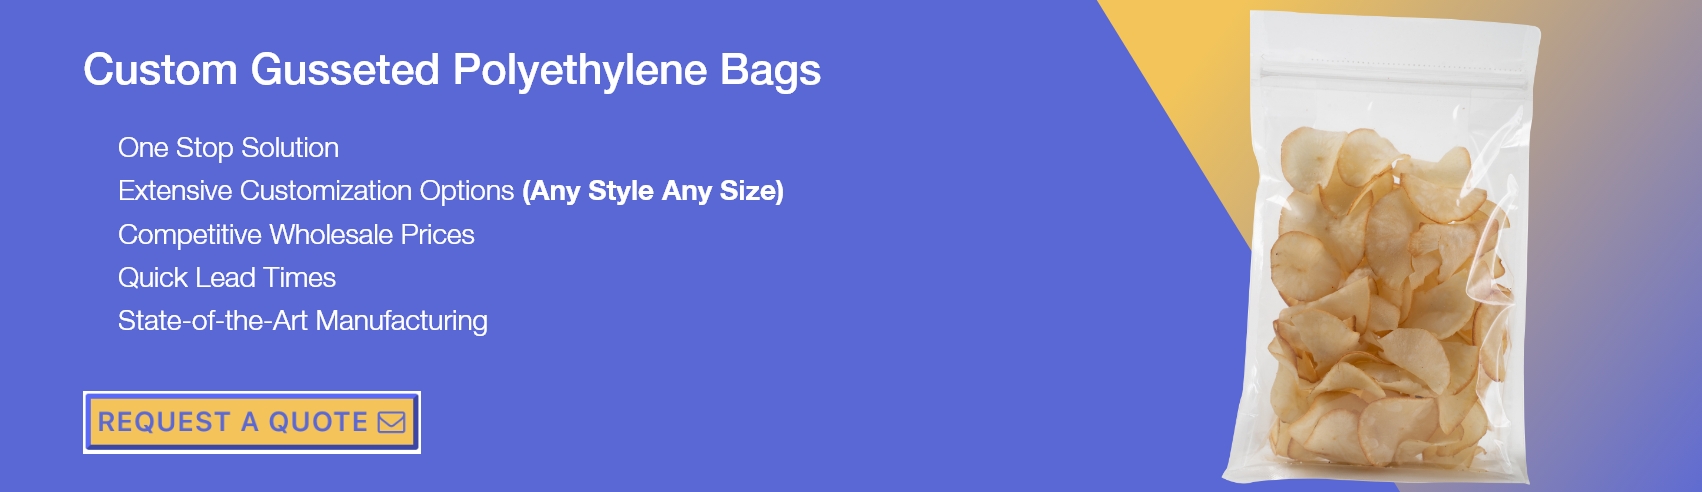 Gusseted Polyethylene Bags